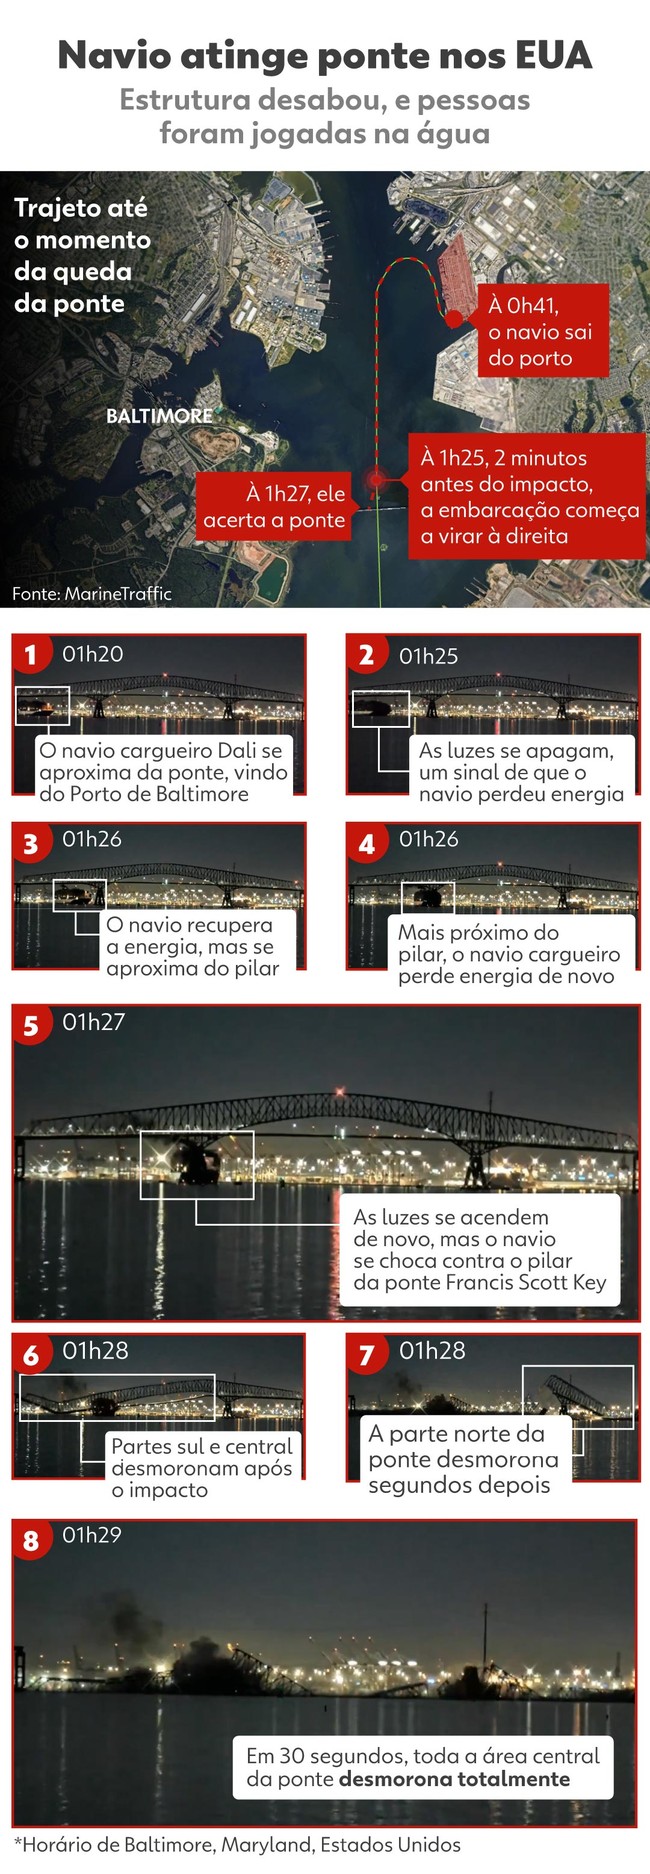 Infográfico apresenta detalhadamente como foi o acidente que derrubou uma ponte nos EUA em Baltimore